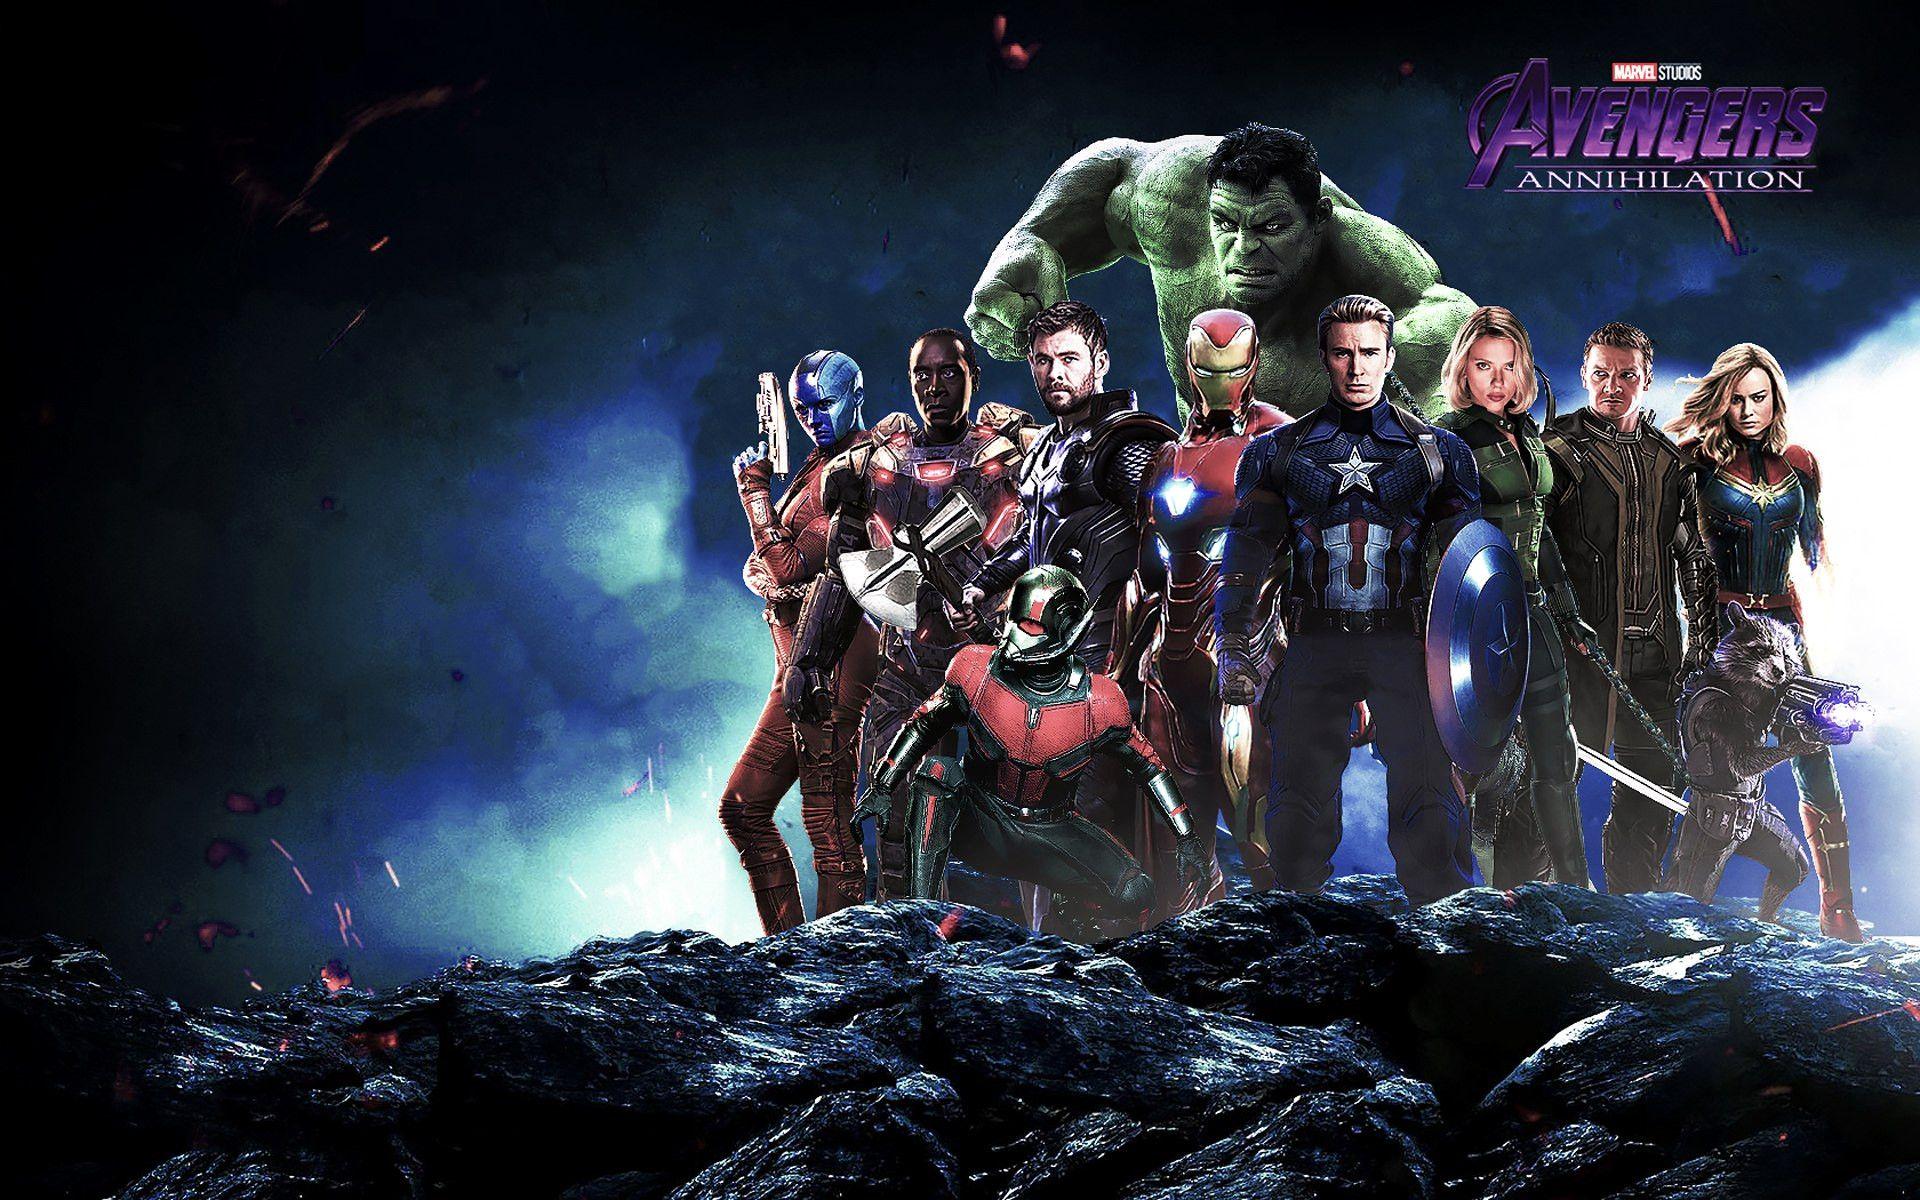 Awesome Avengers Endgame 2019 Annihilation Desktop Wallpaper